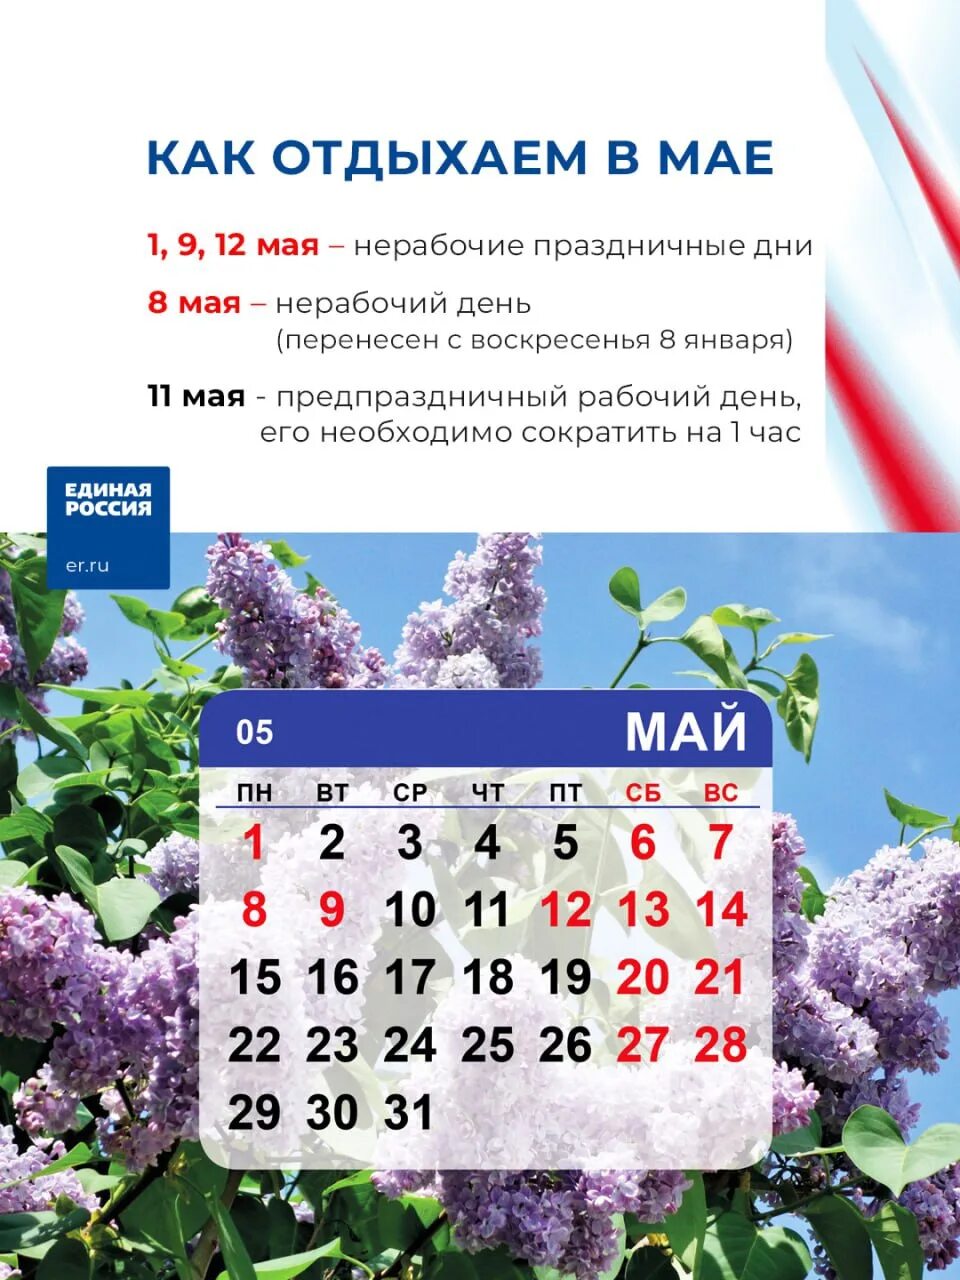 Выходные в мае татарстан. Праздники в мае. Выходные на майские праздники. Праздники в мае календарь. Рабочие и праздничные дни майские.